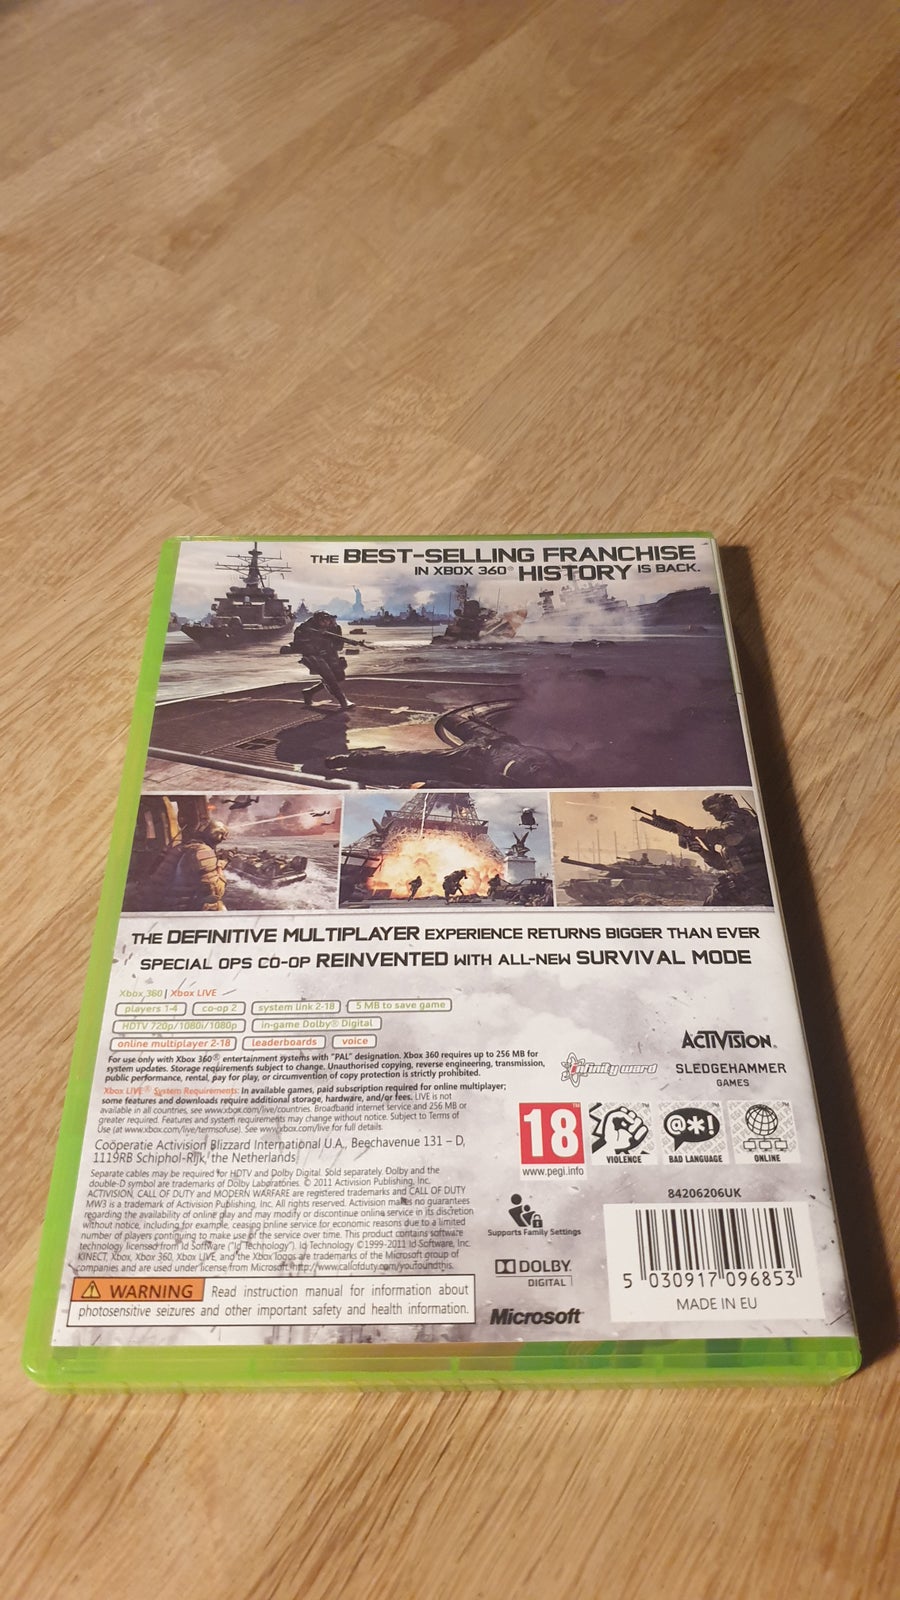 CALL Of DUTY MW3 (Modern Warfare 3), Xbox 360, FPS